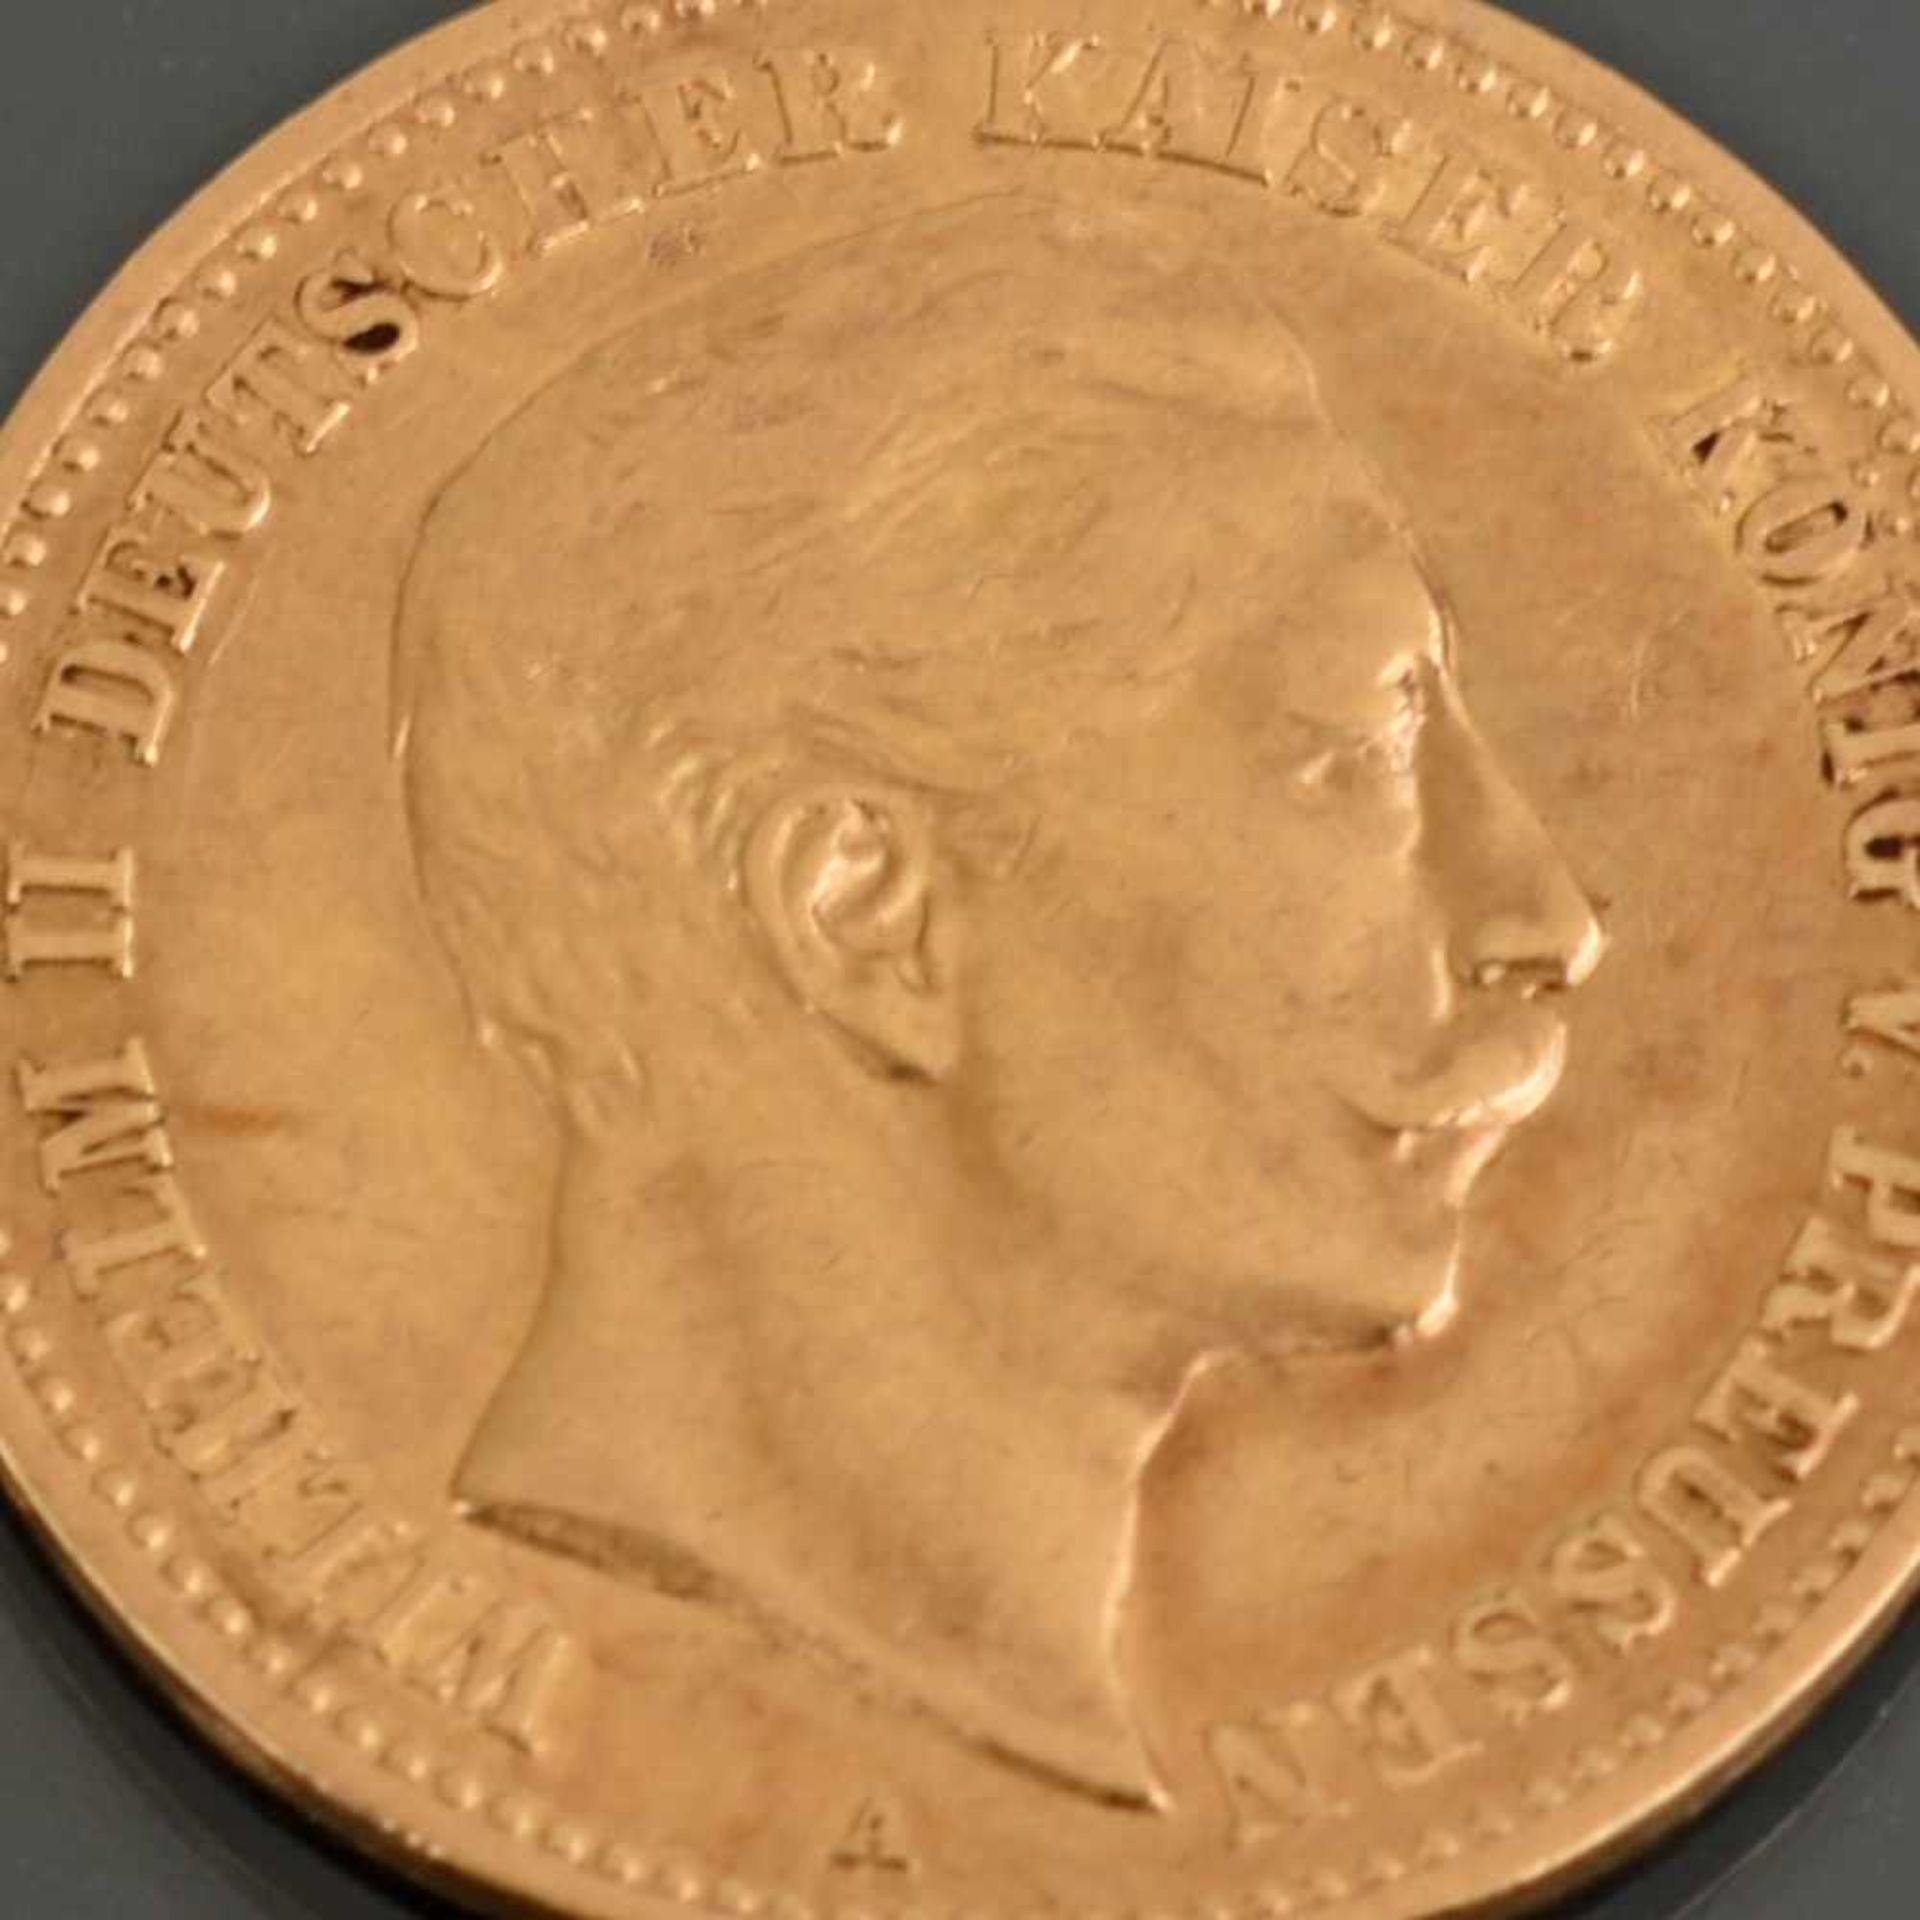 Goldmünze Kaiserreich - Preußen 1905 10 Mark in Gold, 900/1000, 3,98 g, D ca. 19,5 mm, av. Wilhelm